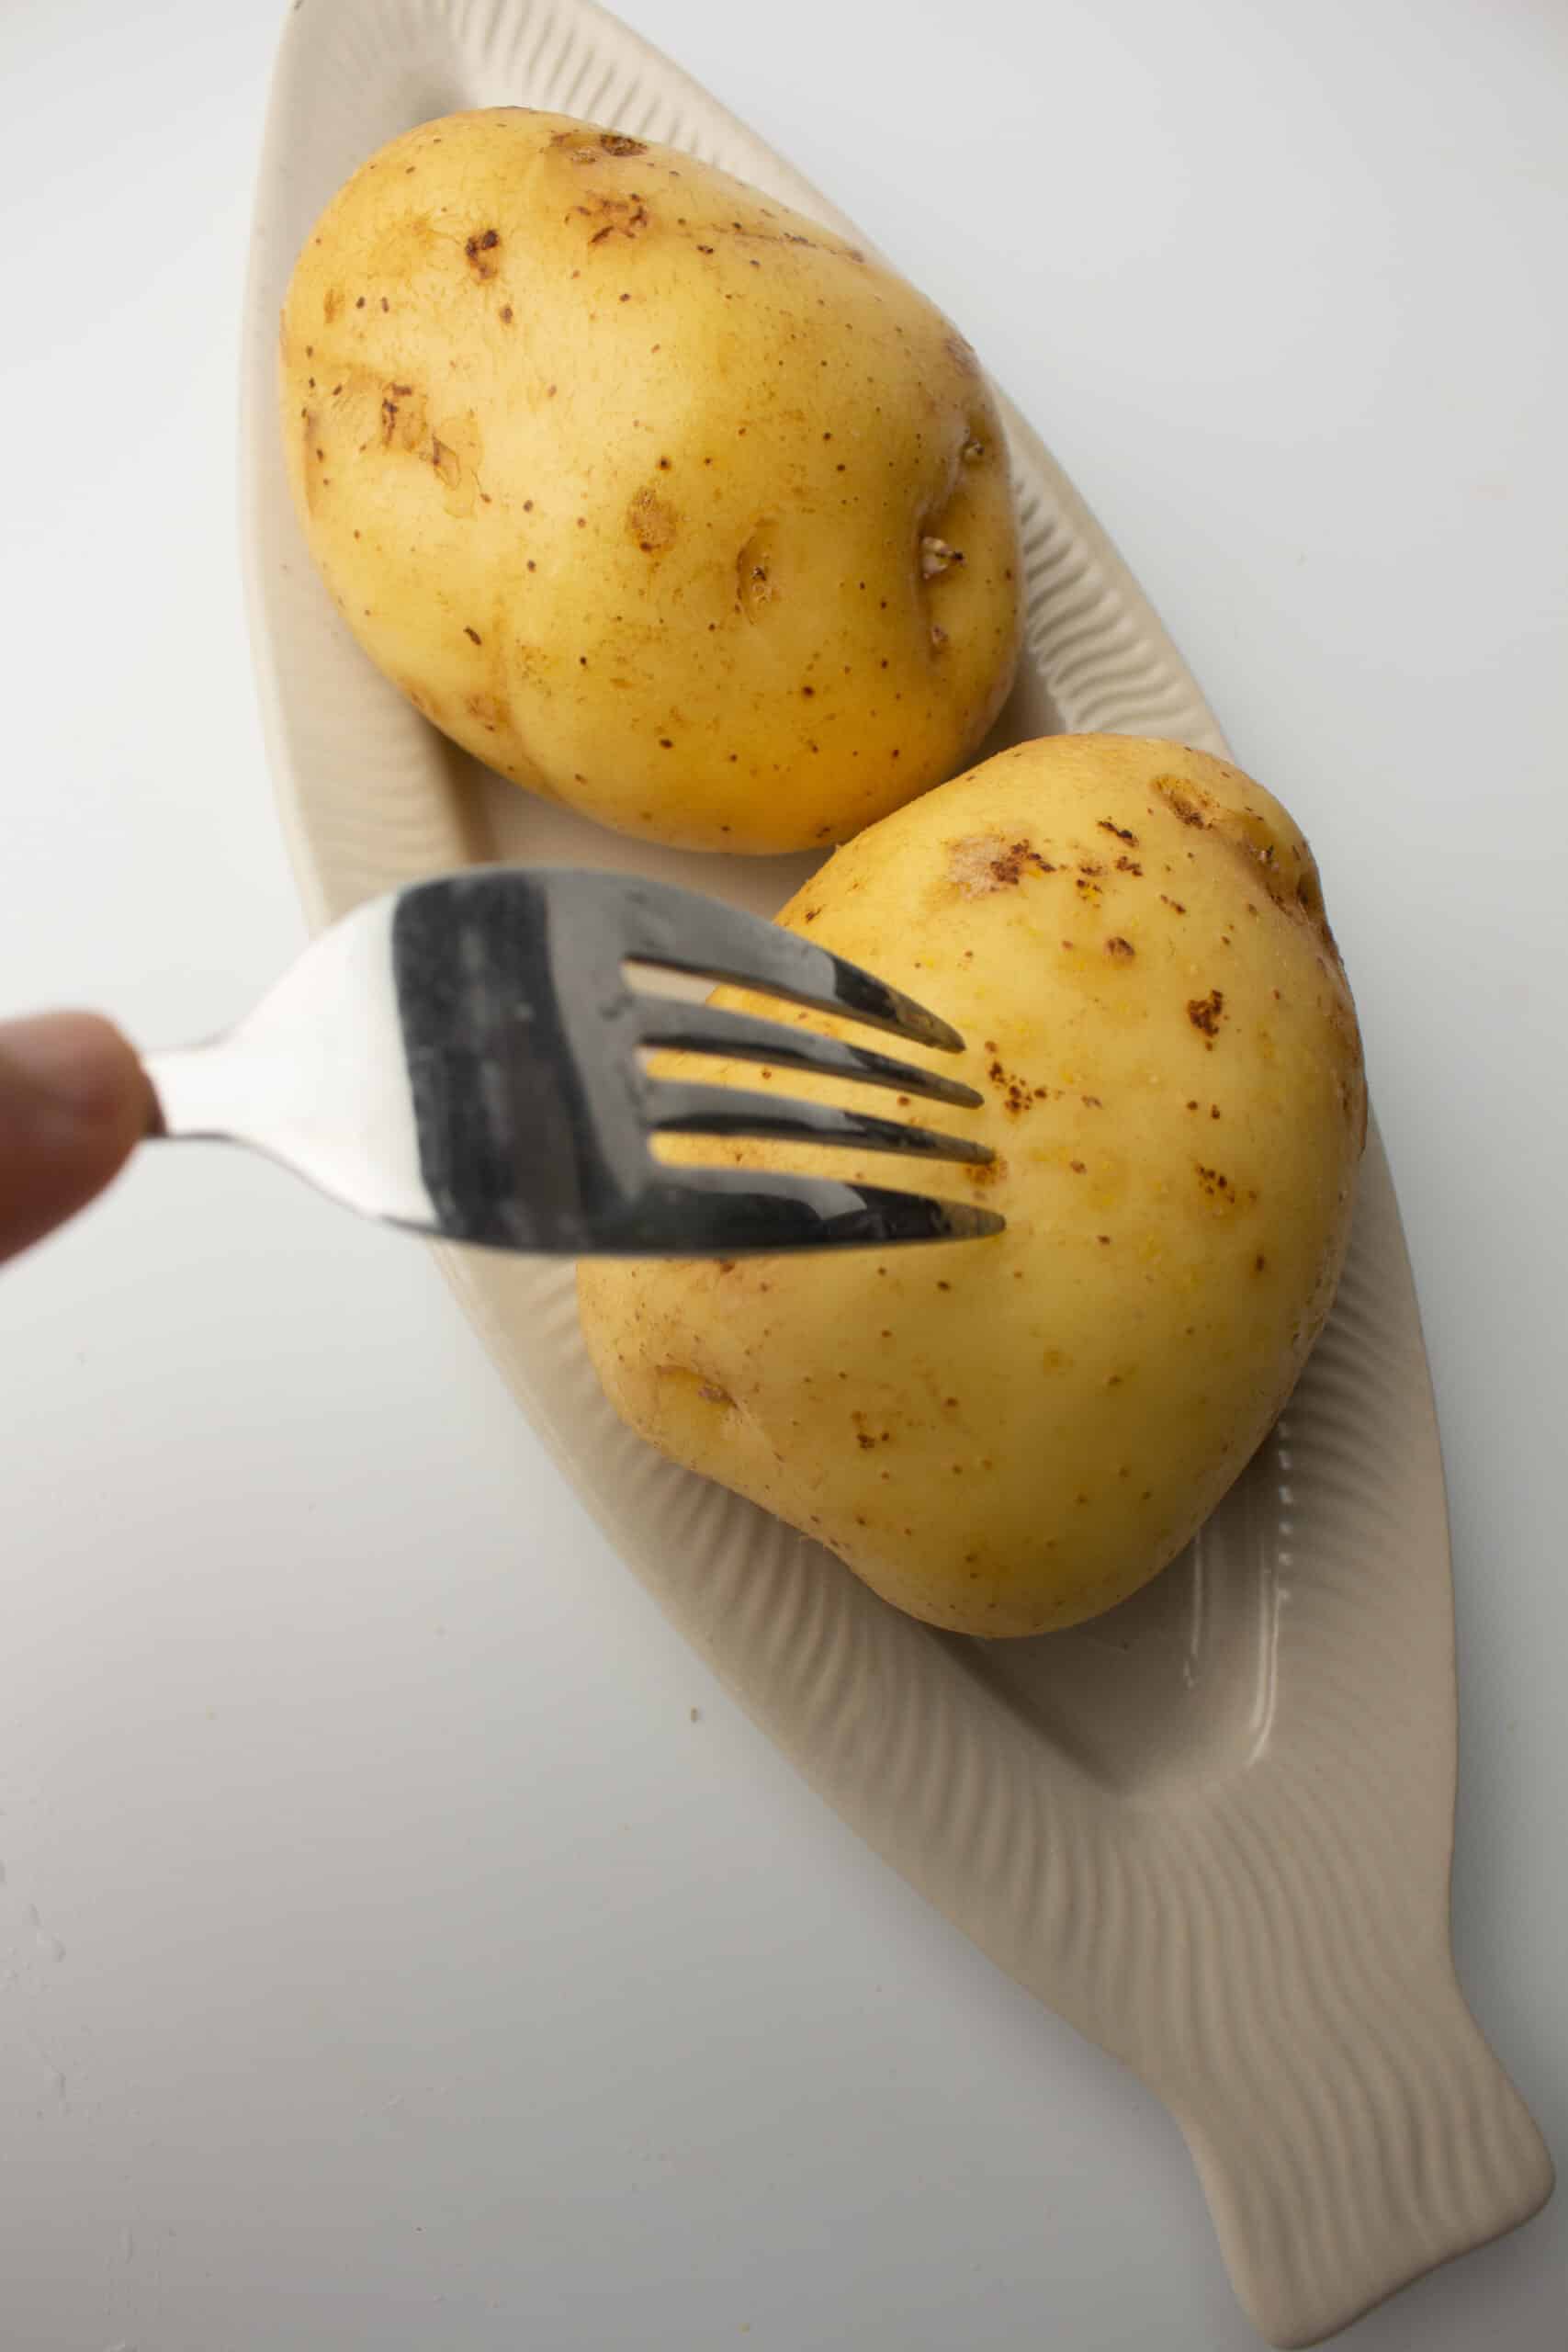 Stabbing potatoes